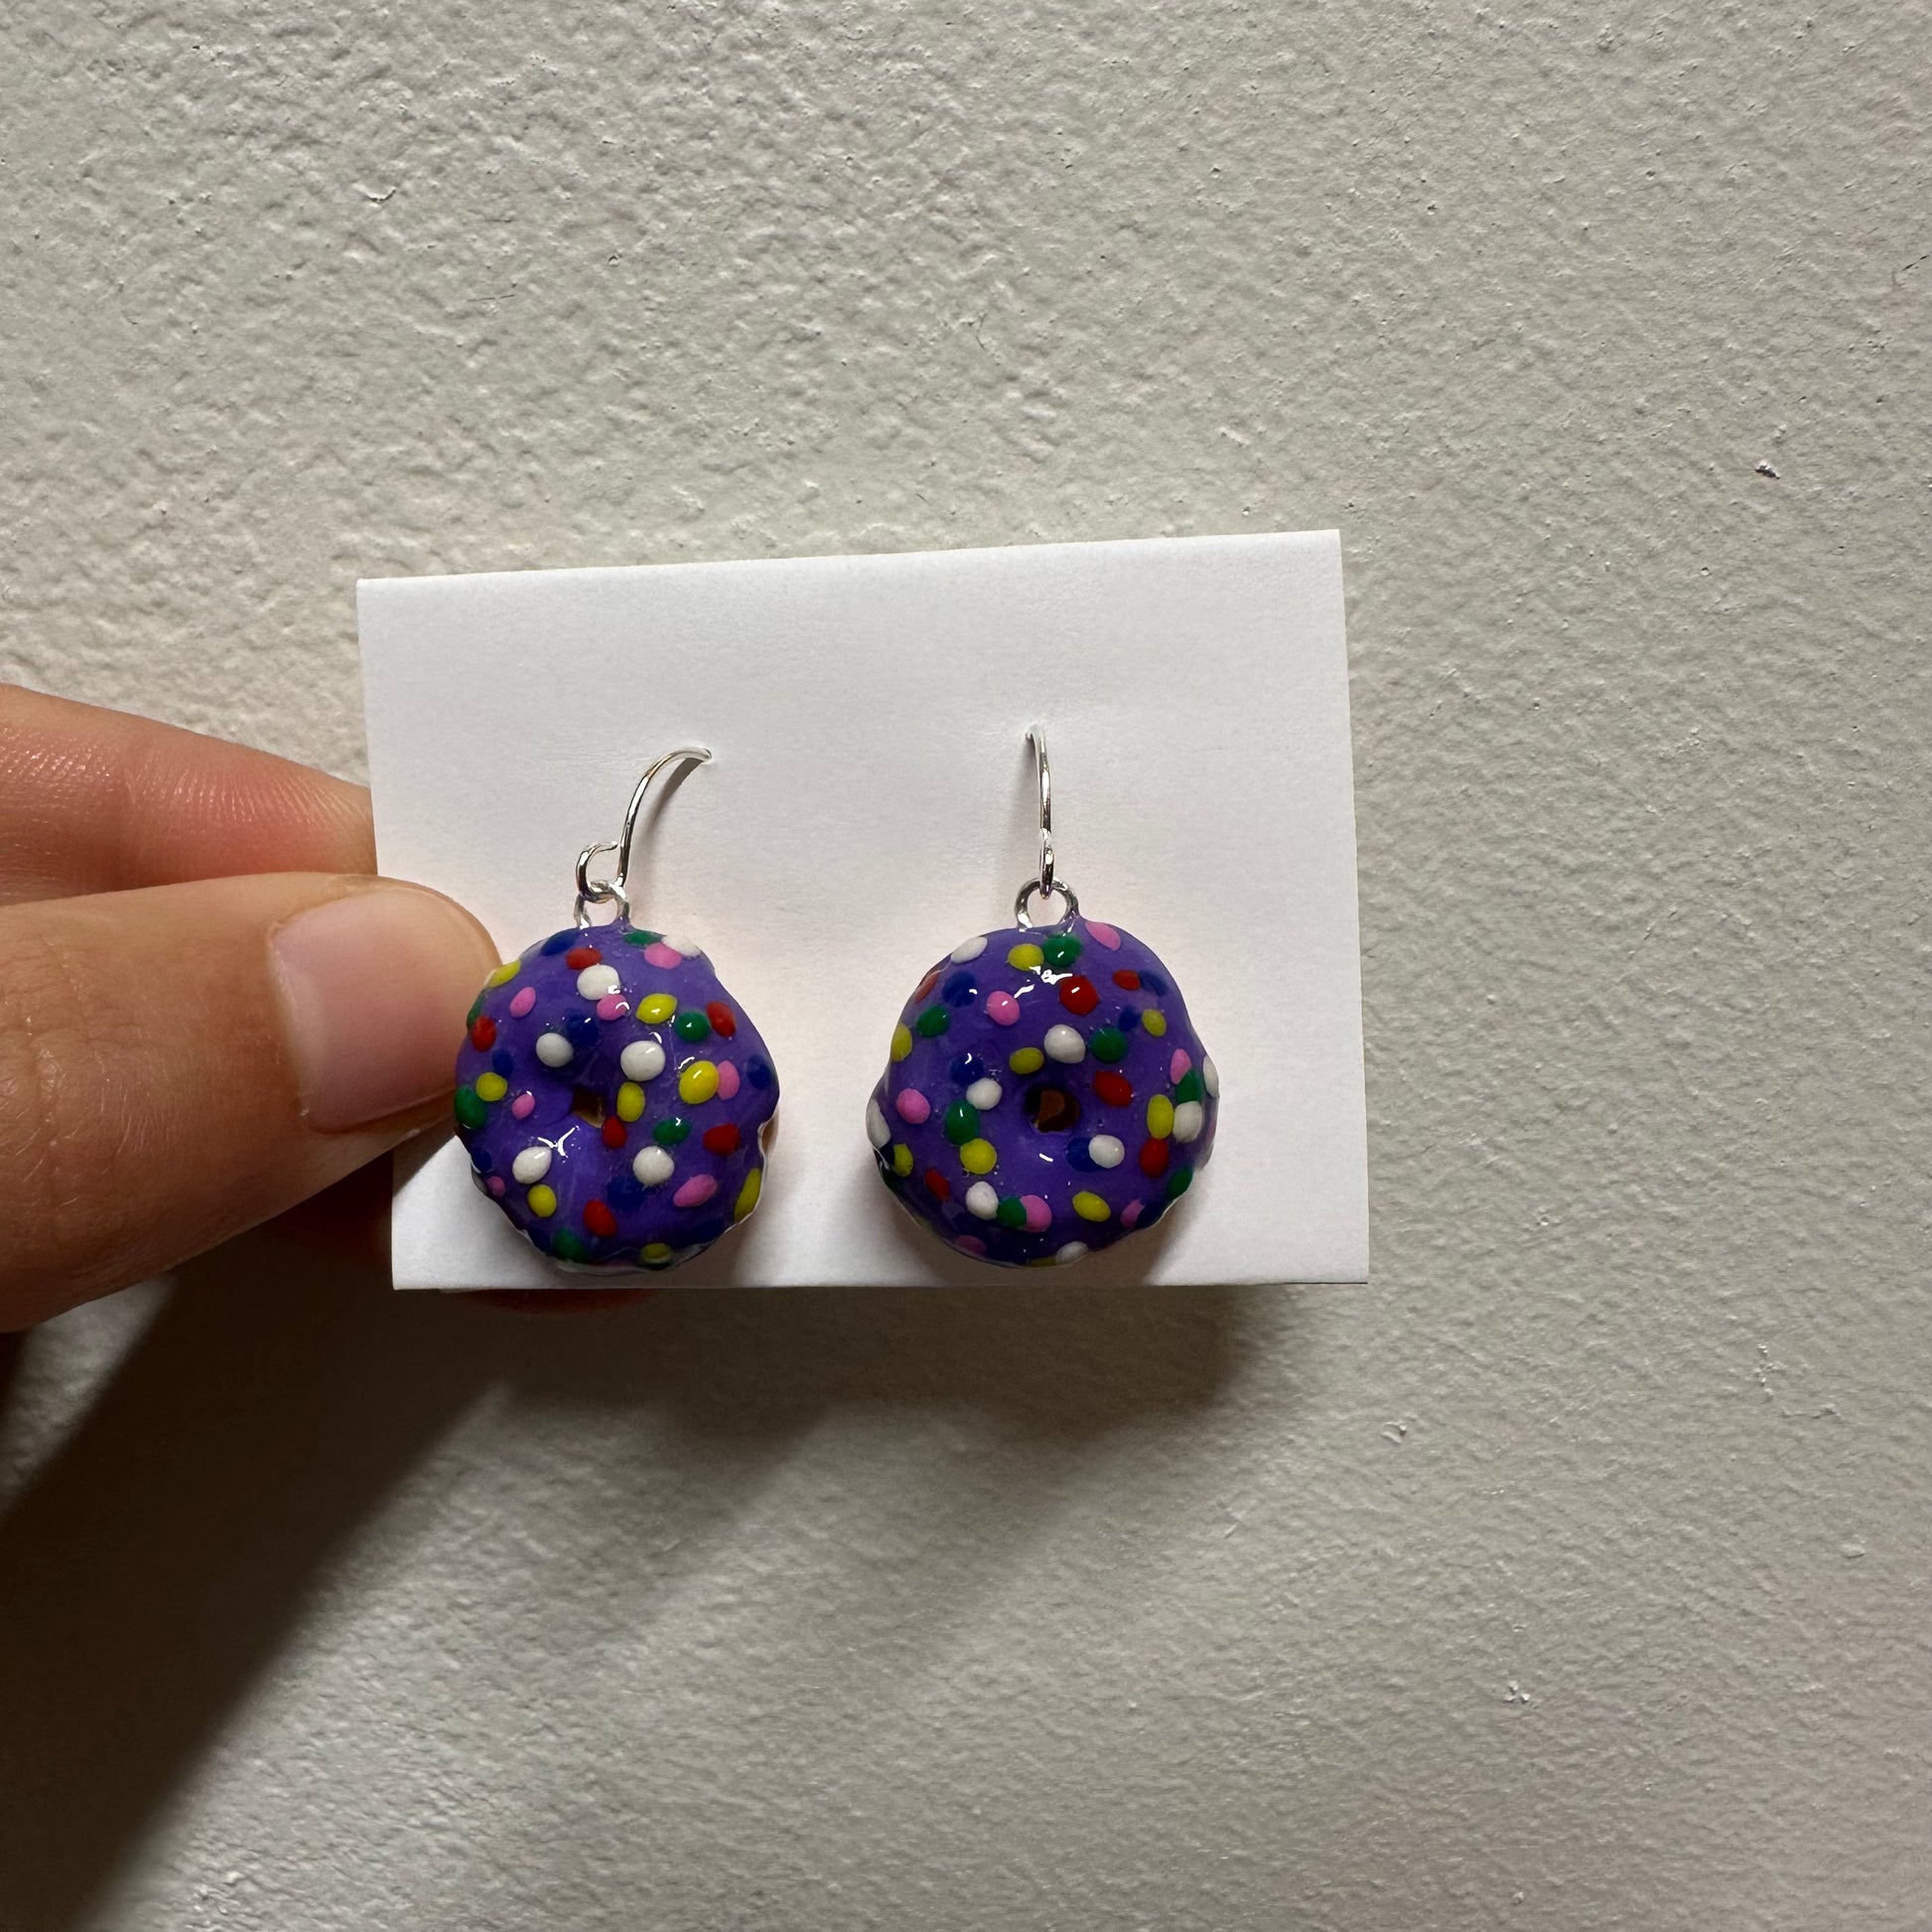 Cute purple donut polymer clay earrings